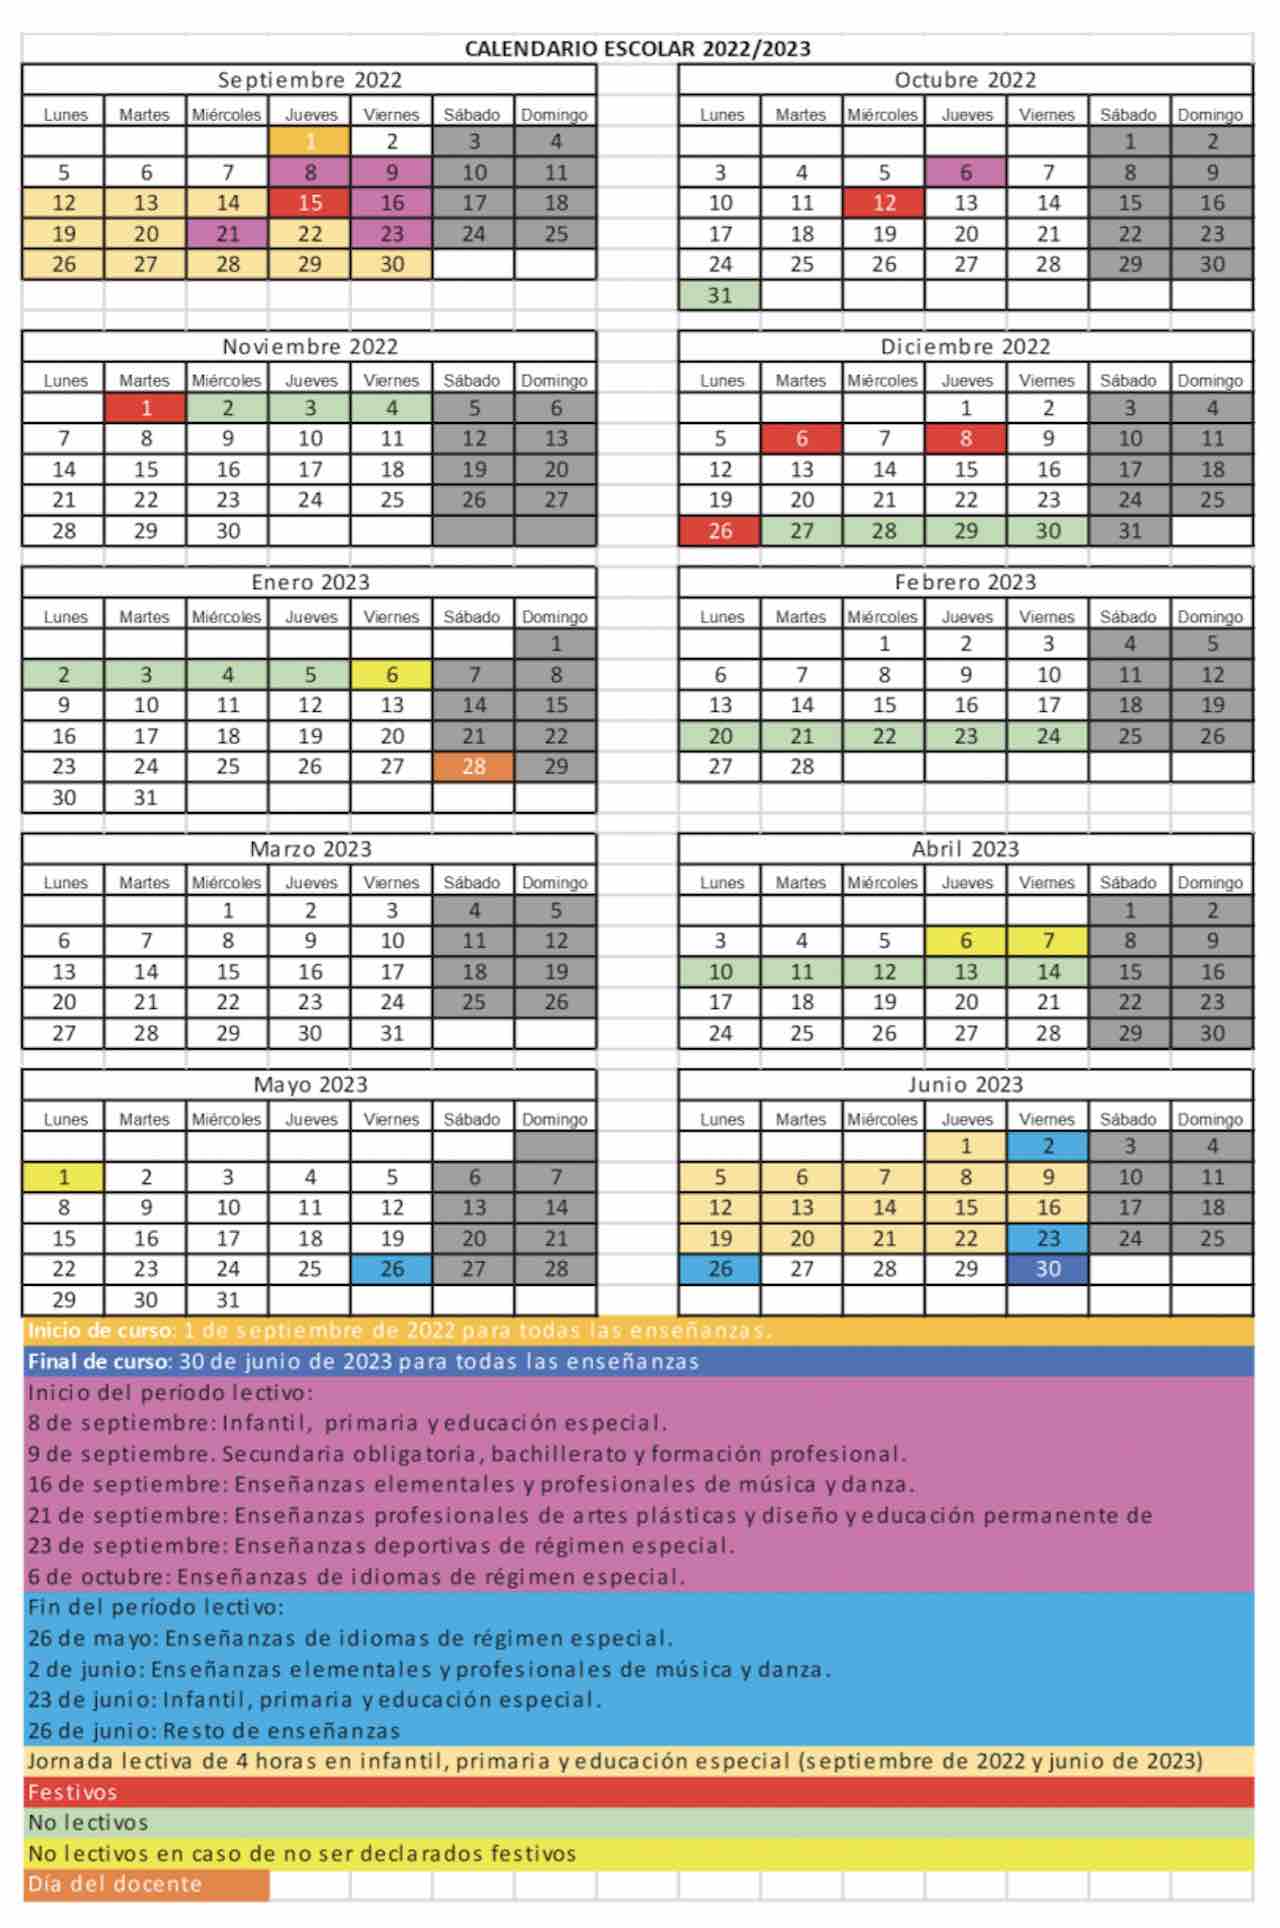 Calendario escolar Cantabria 2022-23